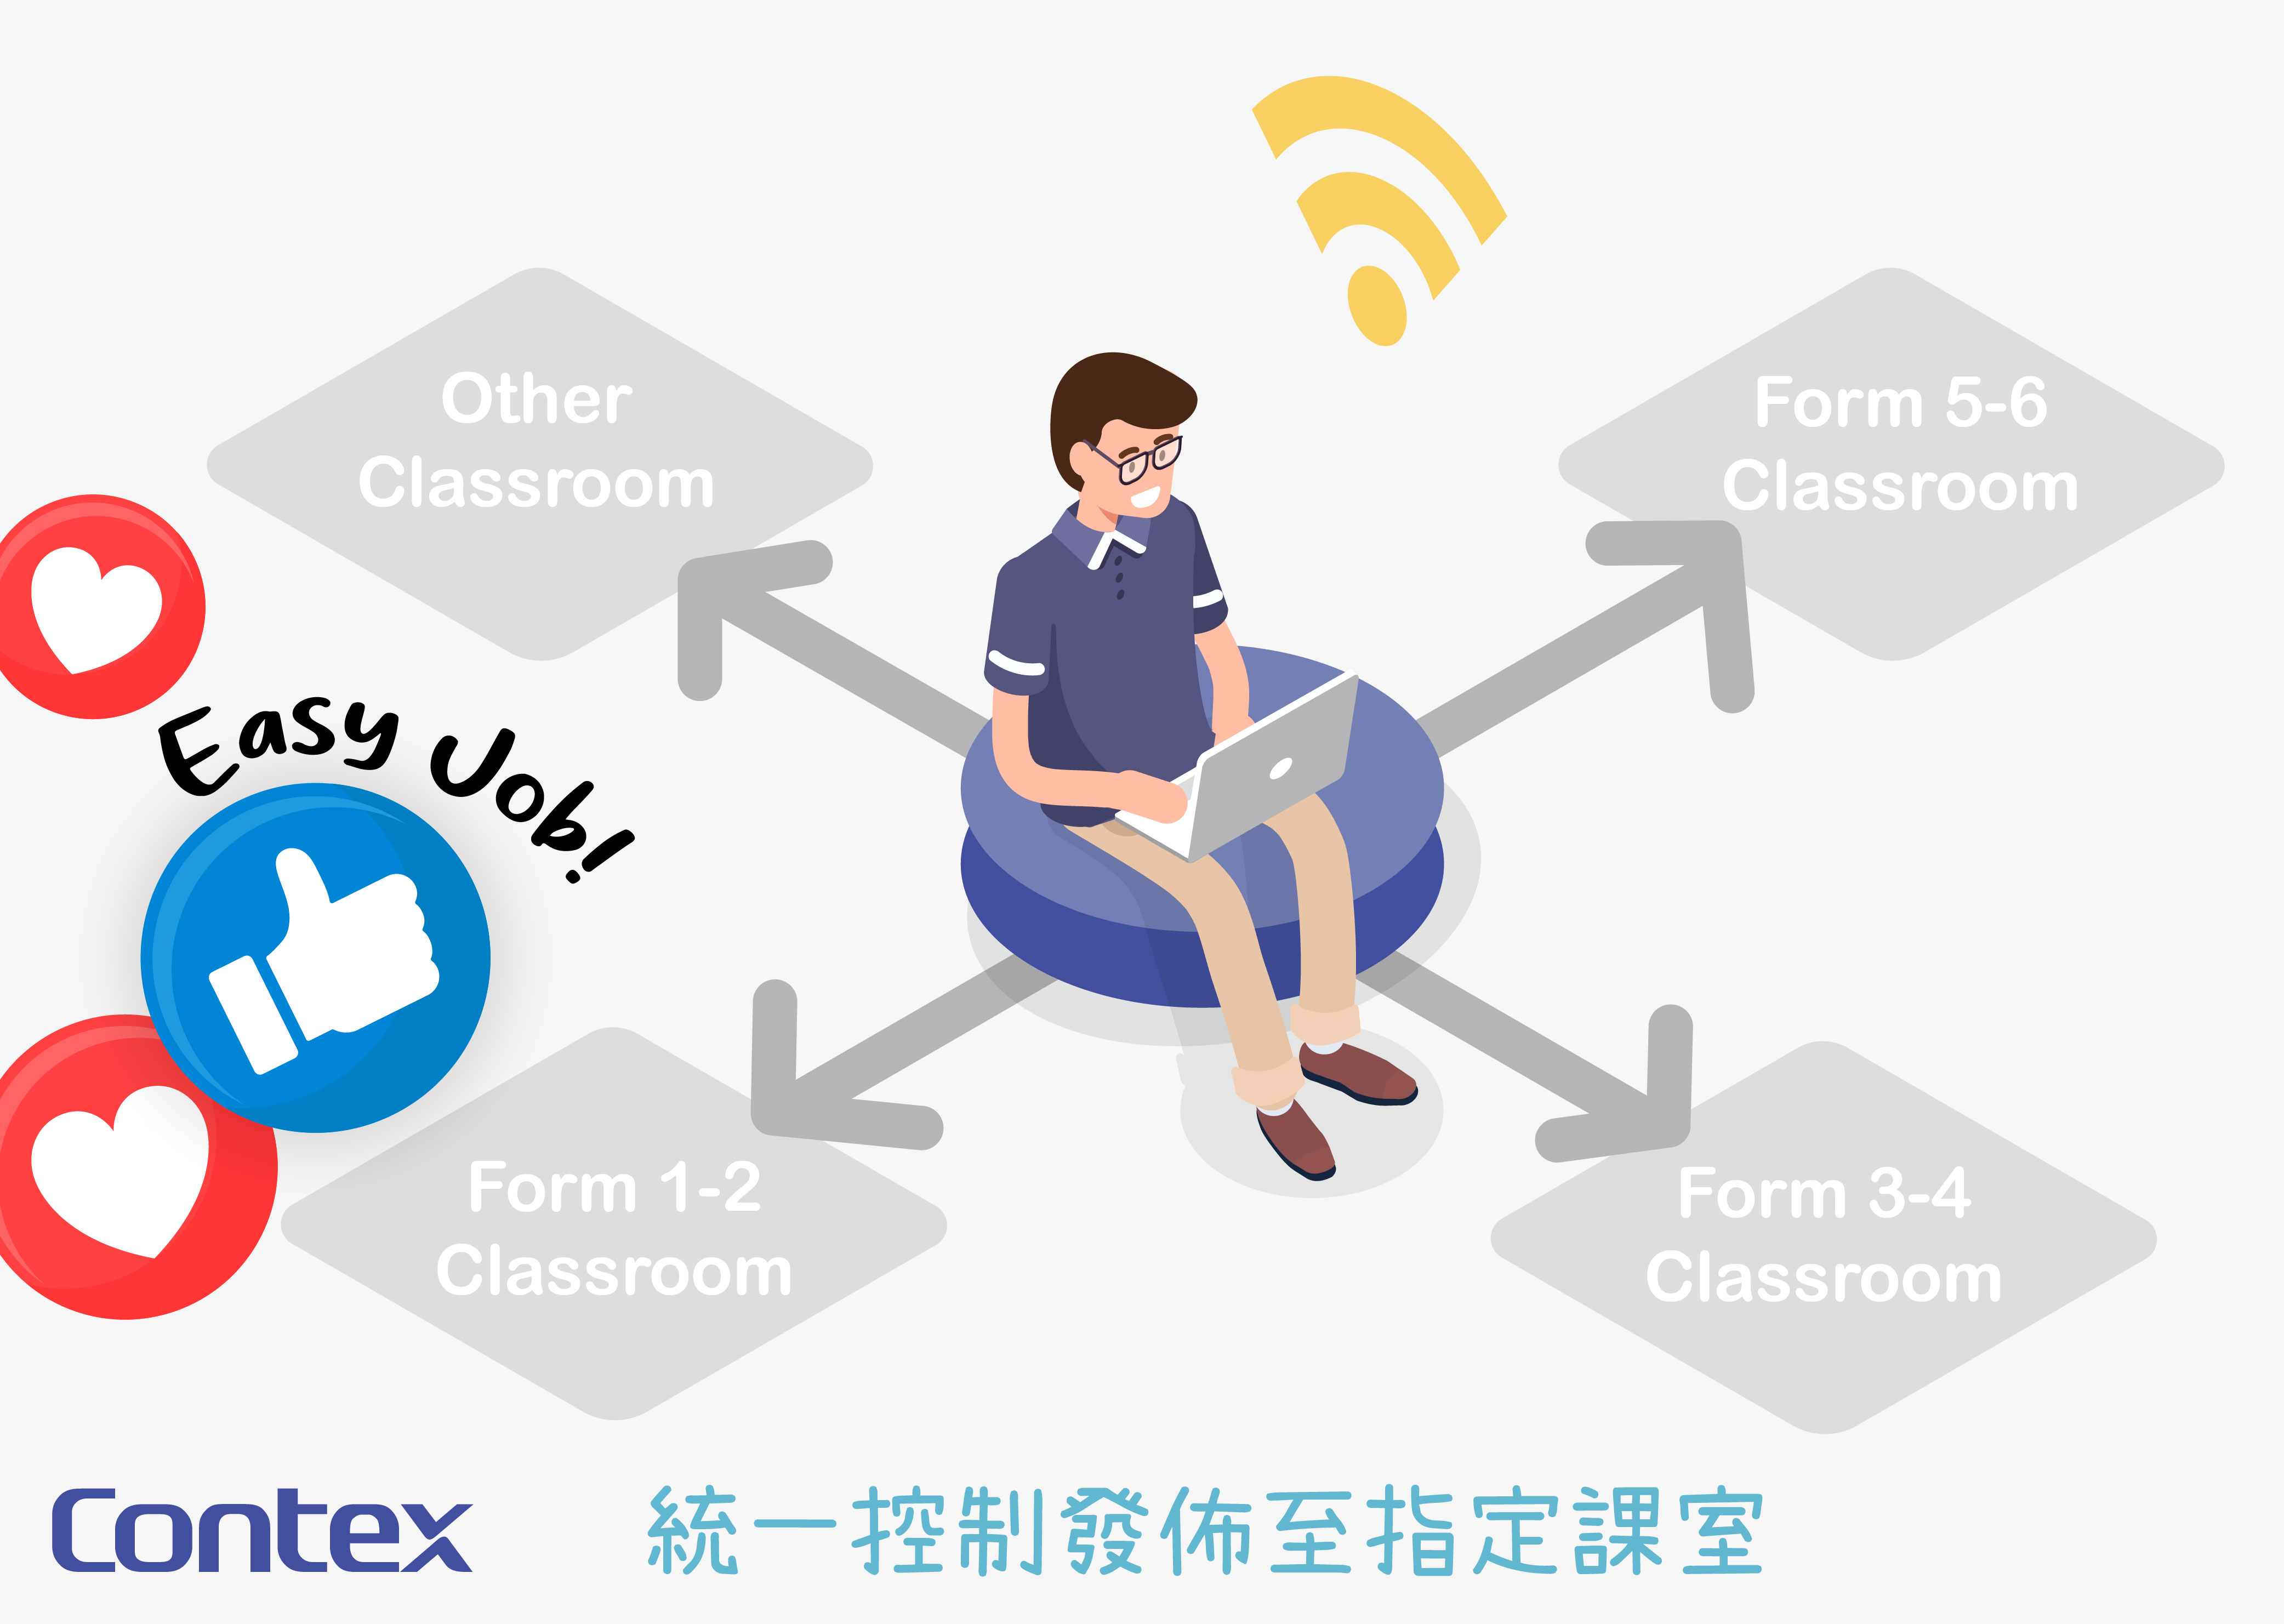 透過Contex雲端發佈系統直播，學生可於課室的電子屏幕觀看活動直播，在維持社交距離措施時，亦能同步參與，加強校園凝聚力。